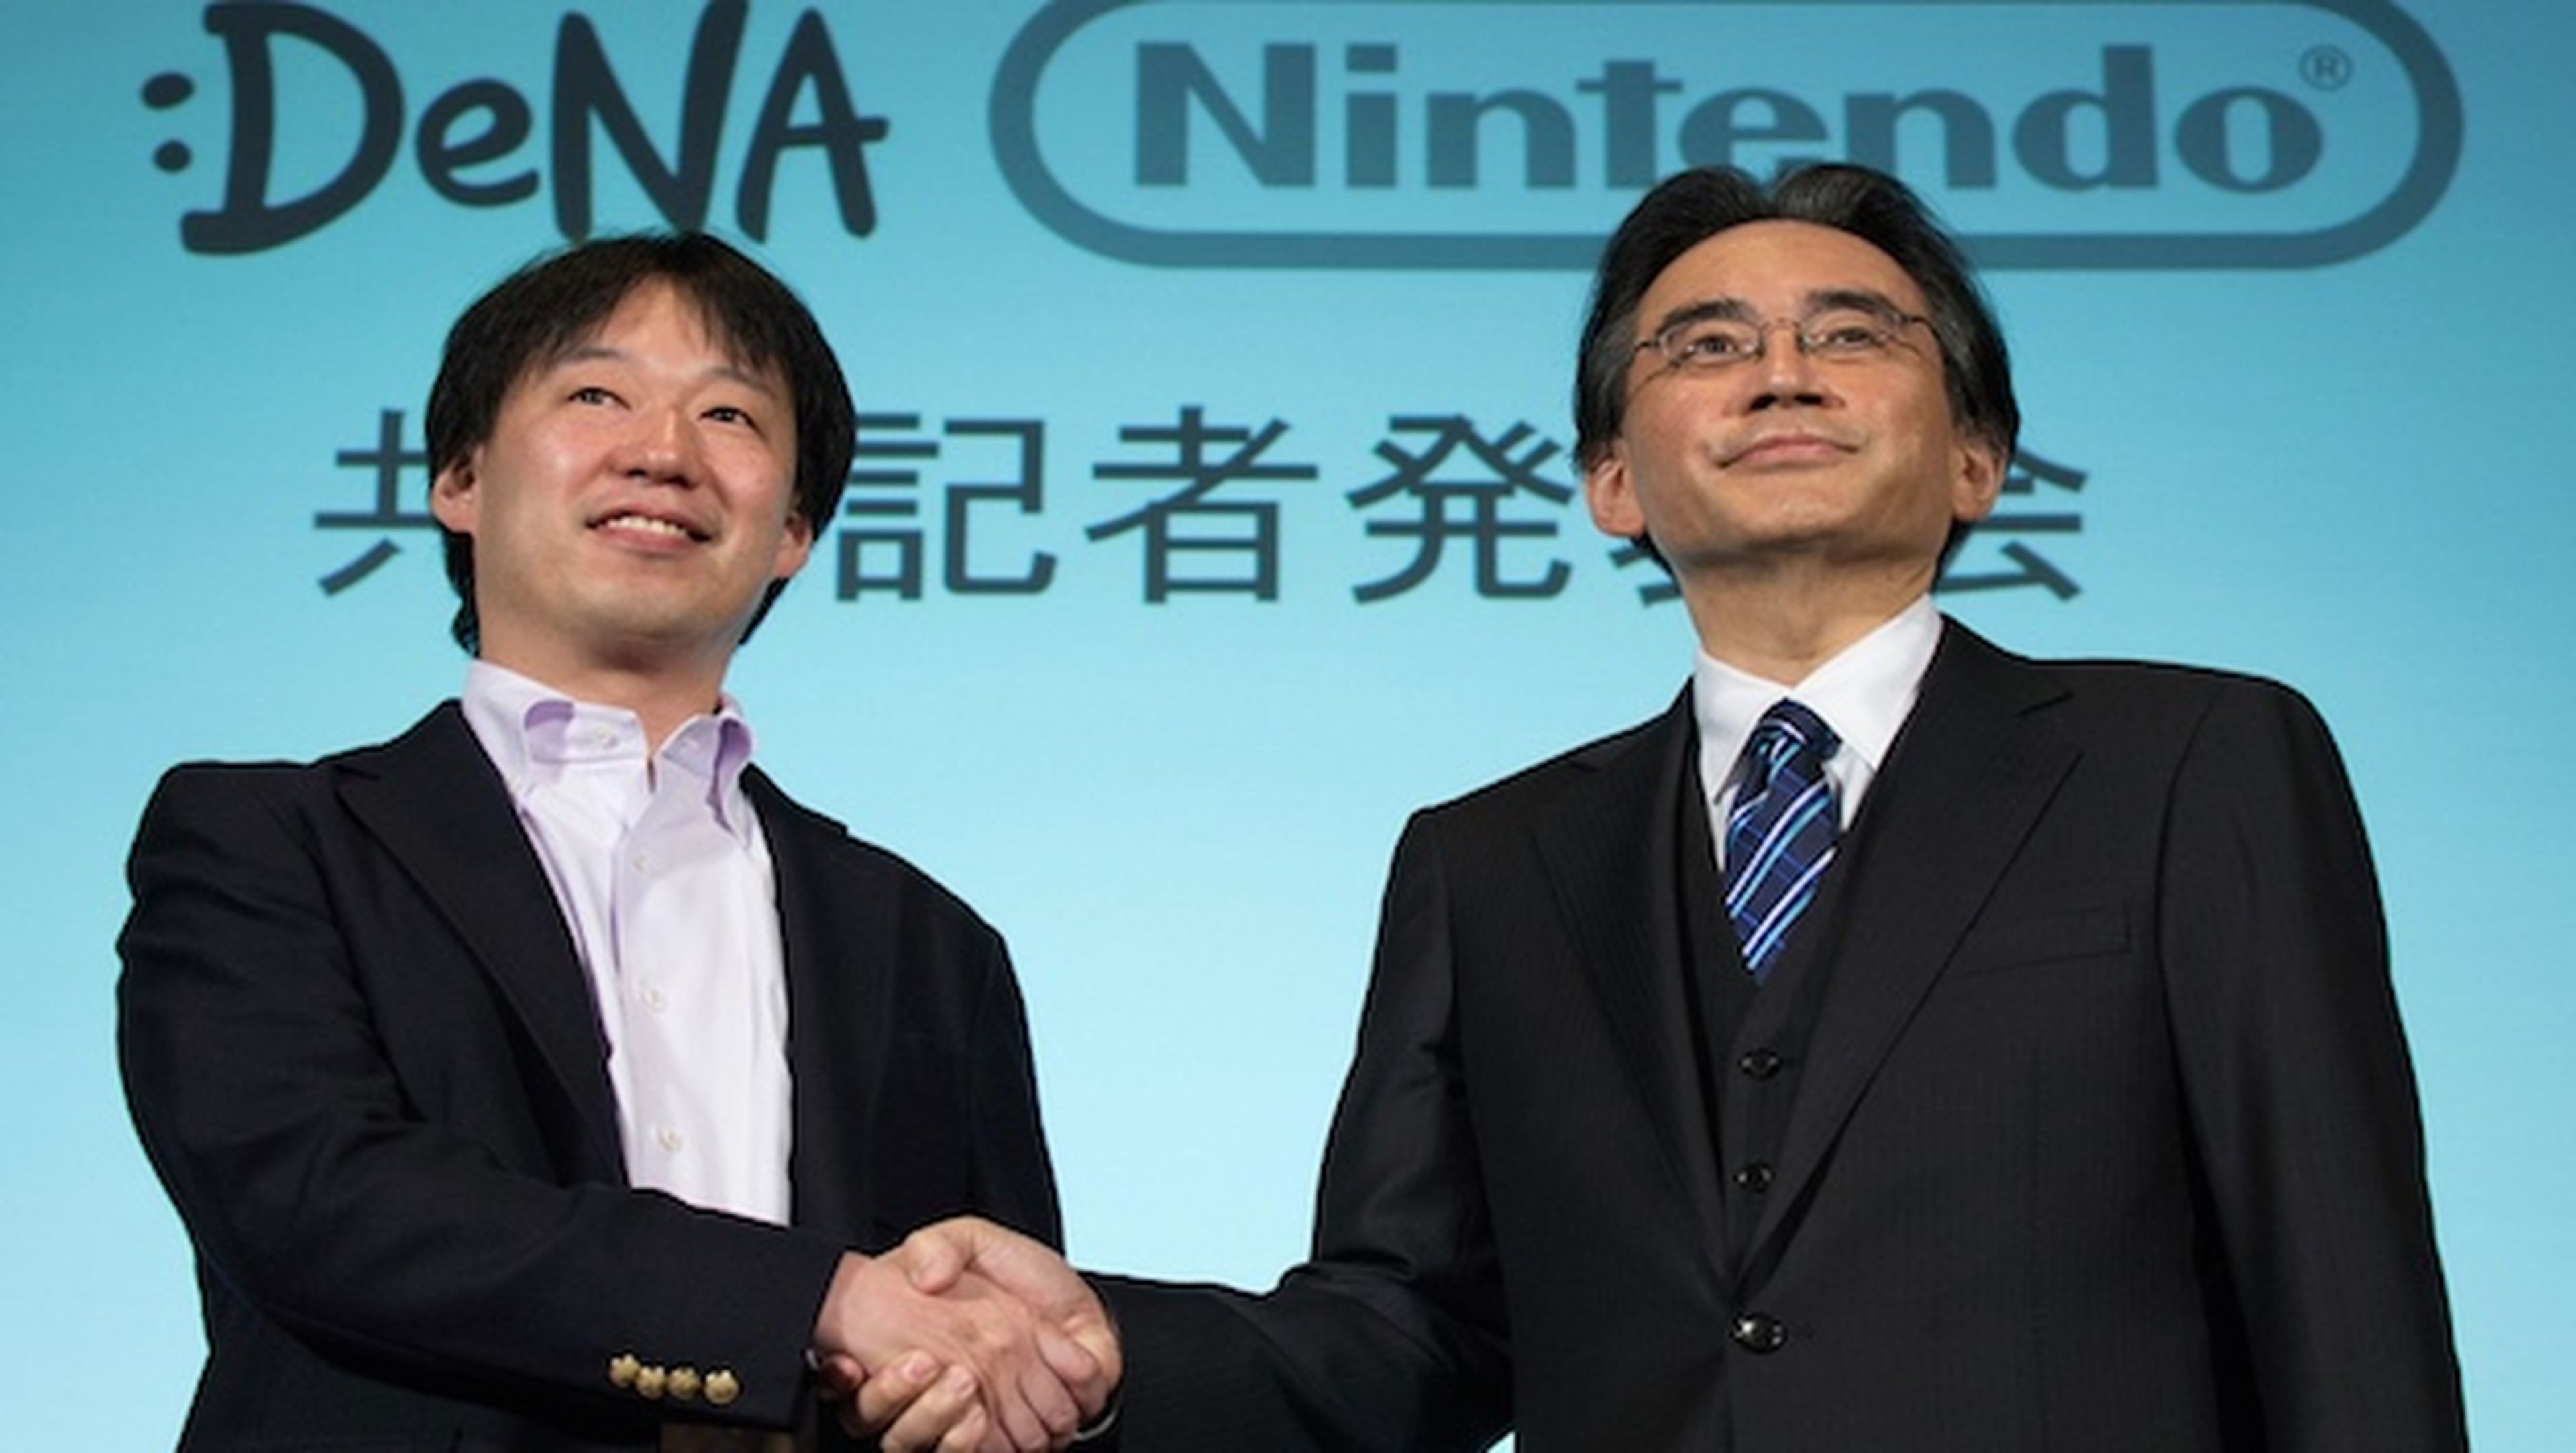 Nintendo lanzará su primer juego para smartphone este año